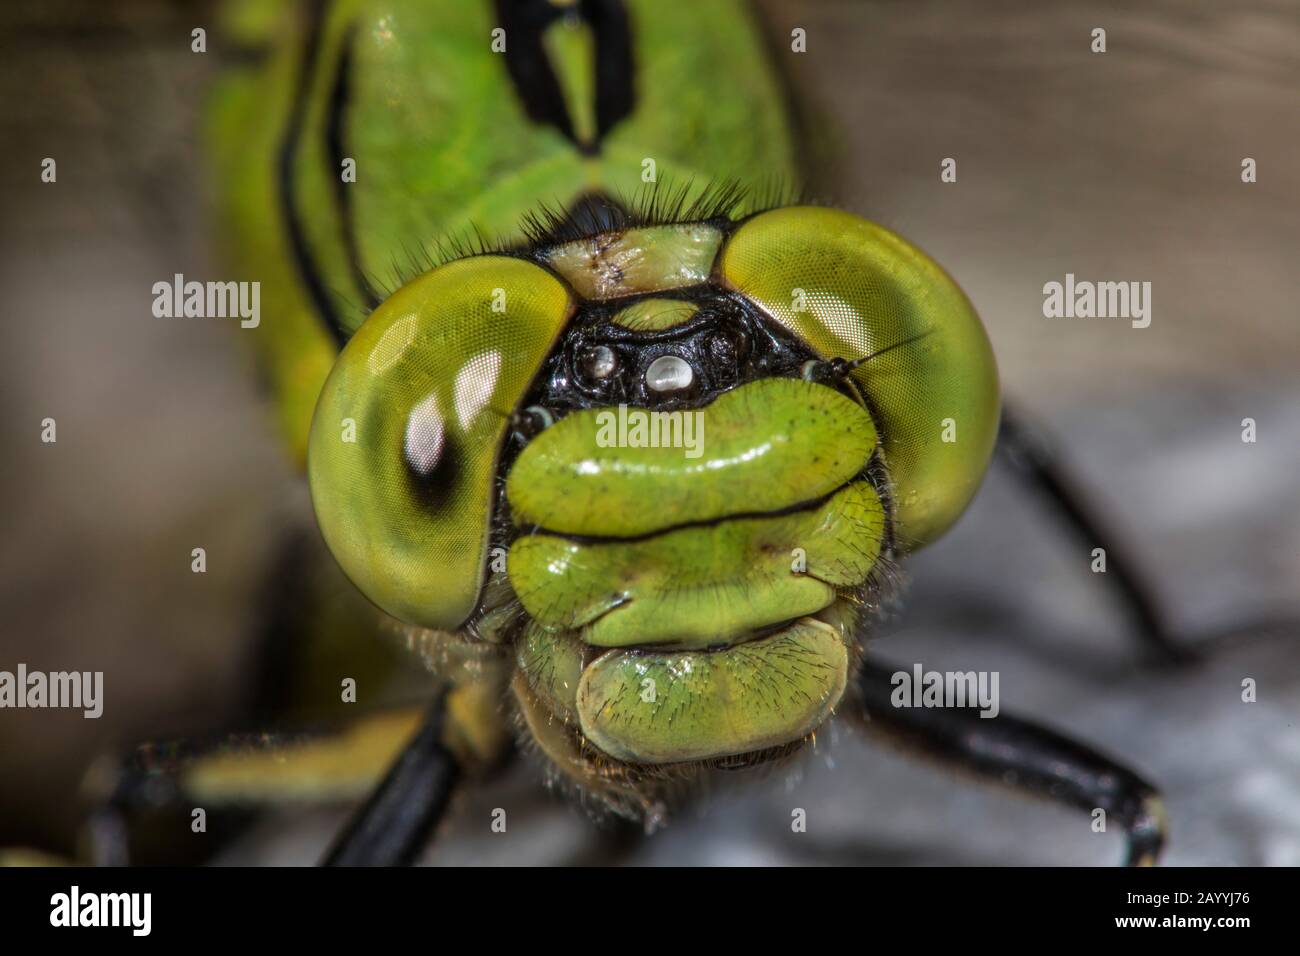 Libélula serpentina, Caracol verde (Ophiogomphus serphinus, Ophiogomphus cecilia), retrato, vista frontal, Alemania Foto de stock